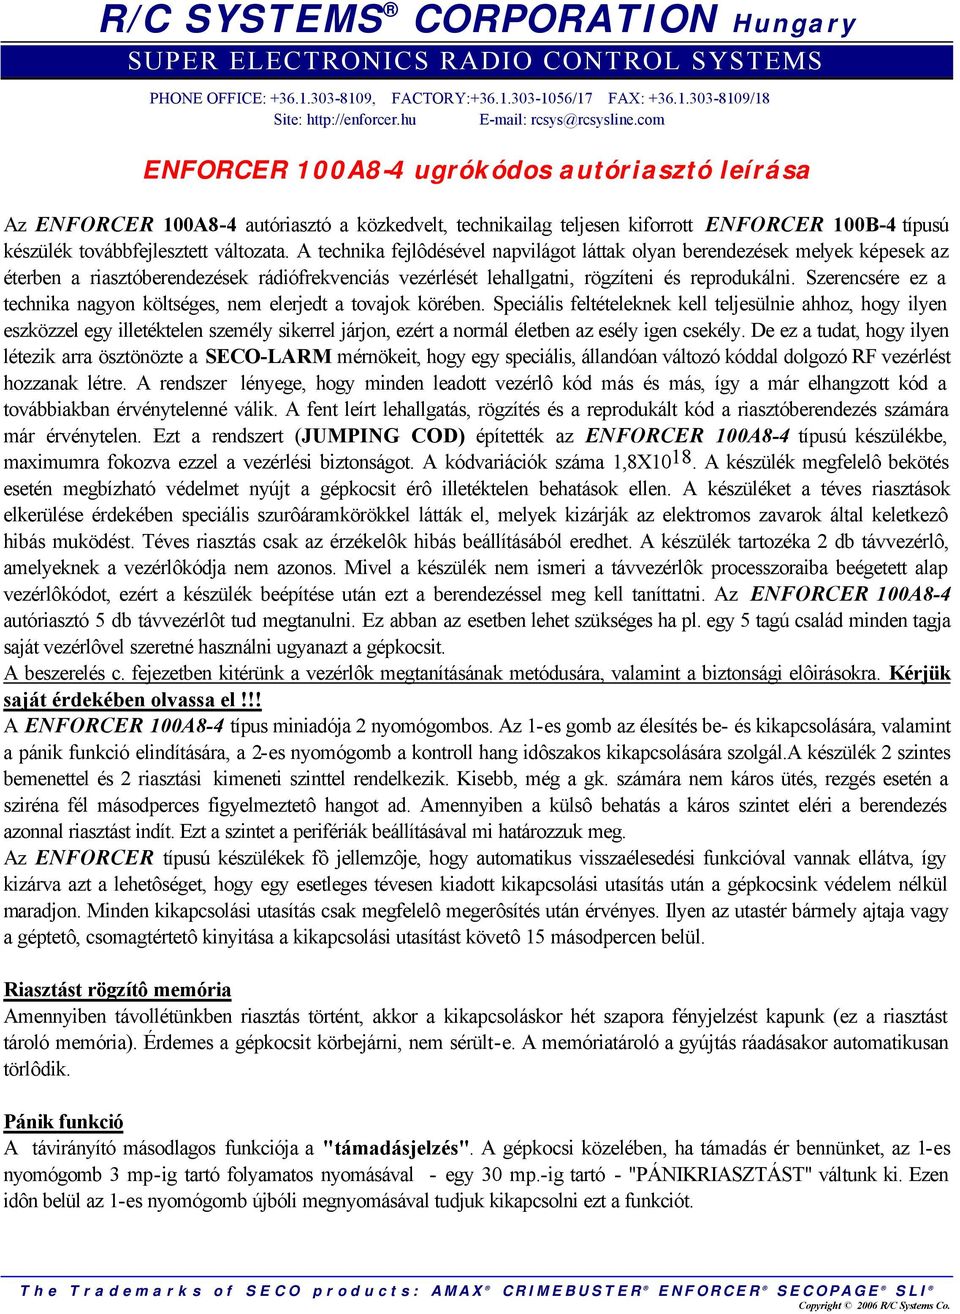 R/C SYSTEMS CORPORATION Hungary - PDF Ingyenes letöltés